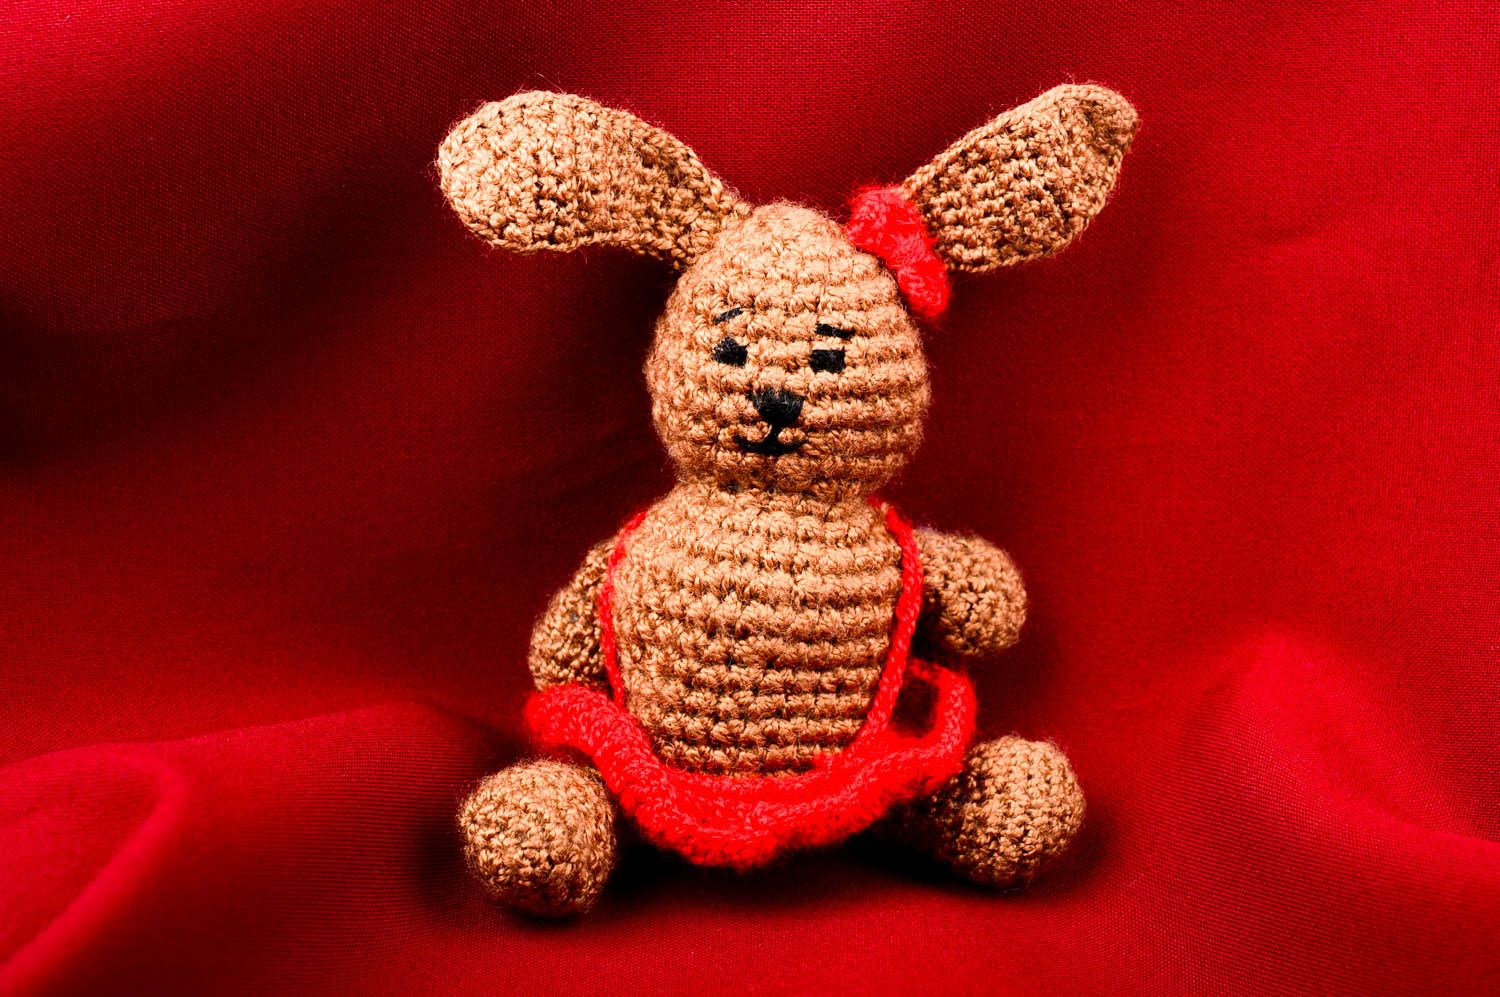 Мягкая игрушка хэнд мейд игрушка заяц в красной юбке милая детская игрушка фото 1